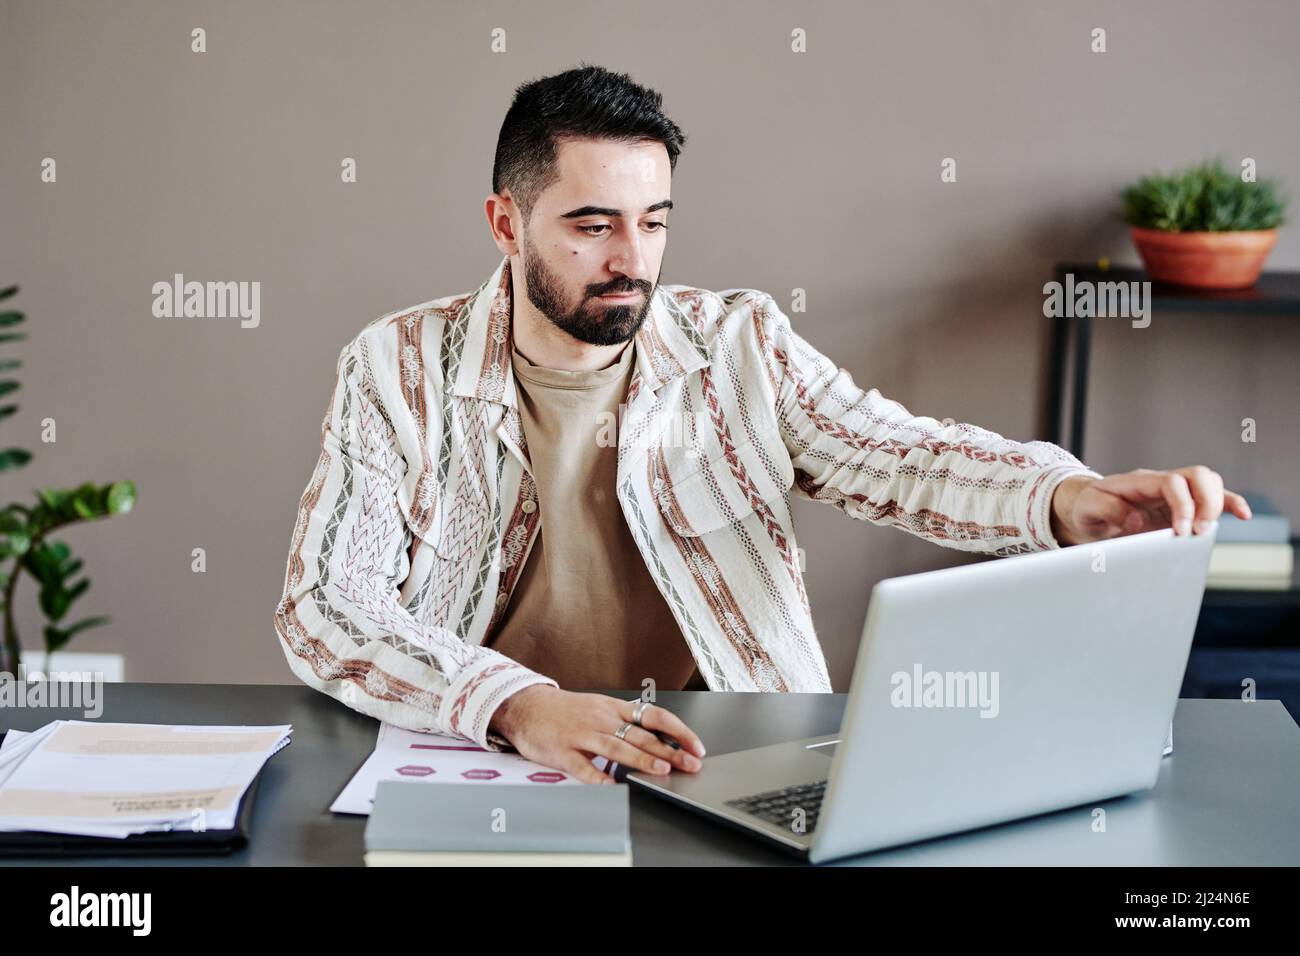 Seriöser ceo in legerer Kleidung, der Laptop öffnet und den Bildschirm anschaut, während er sich für ein digitales Meeting am Schreibtisch im Büro im Freiraum vorbereitete Stockfoto